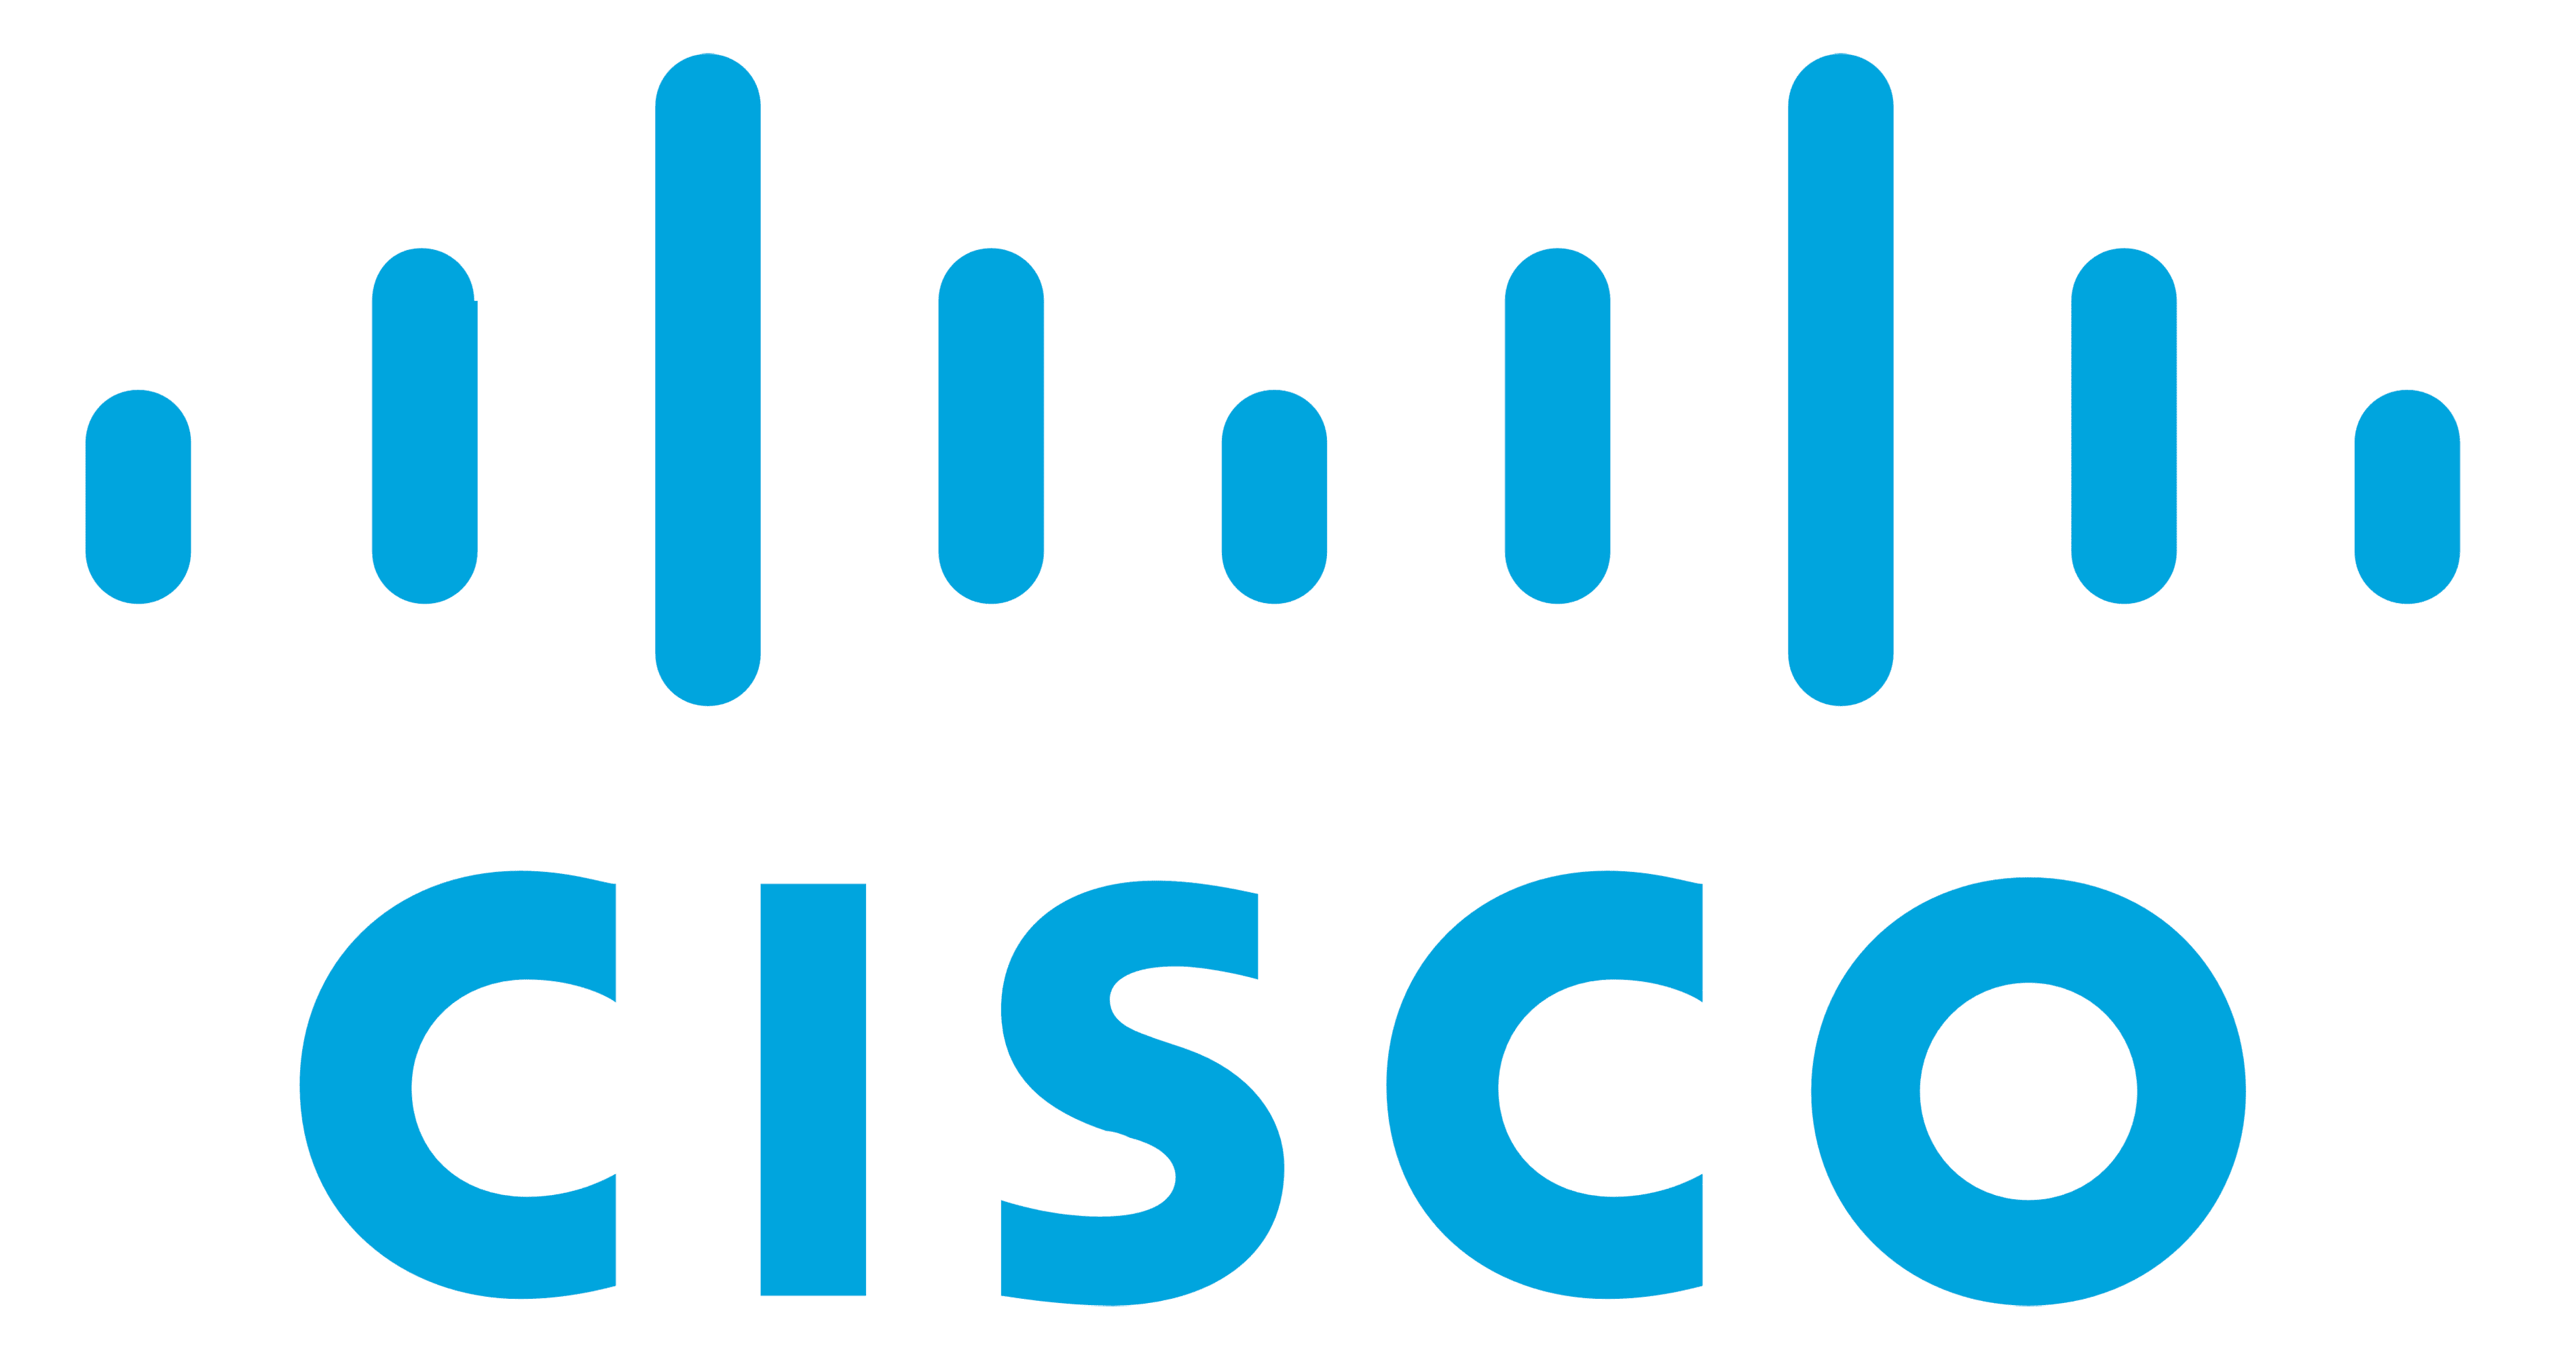 bakwena it Cisco networks